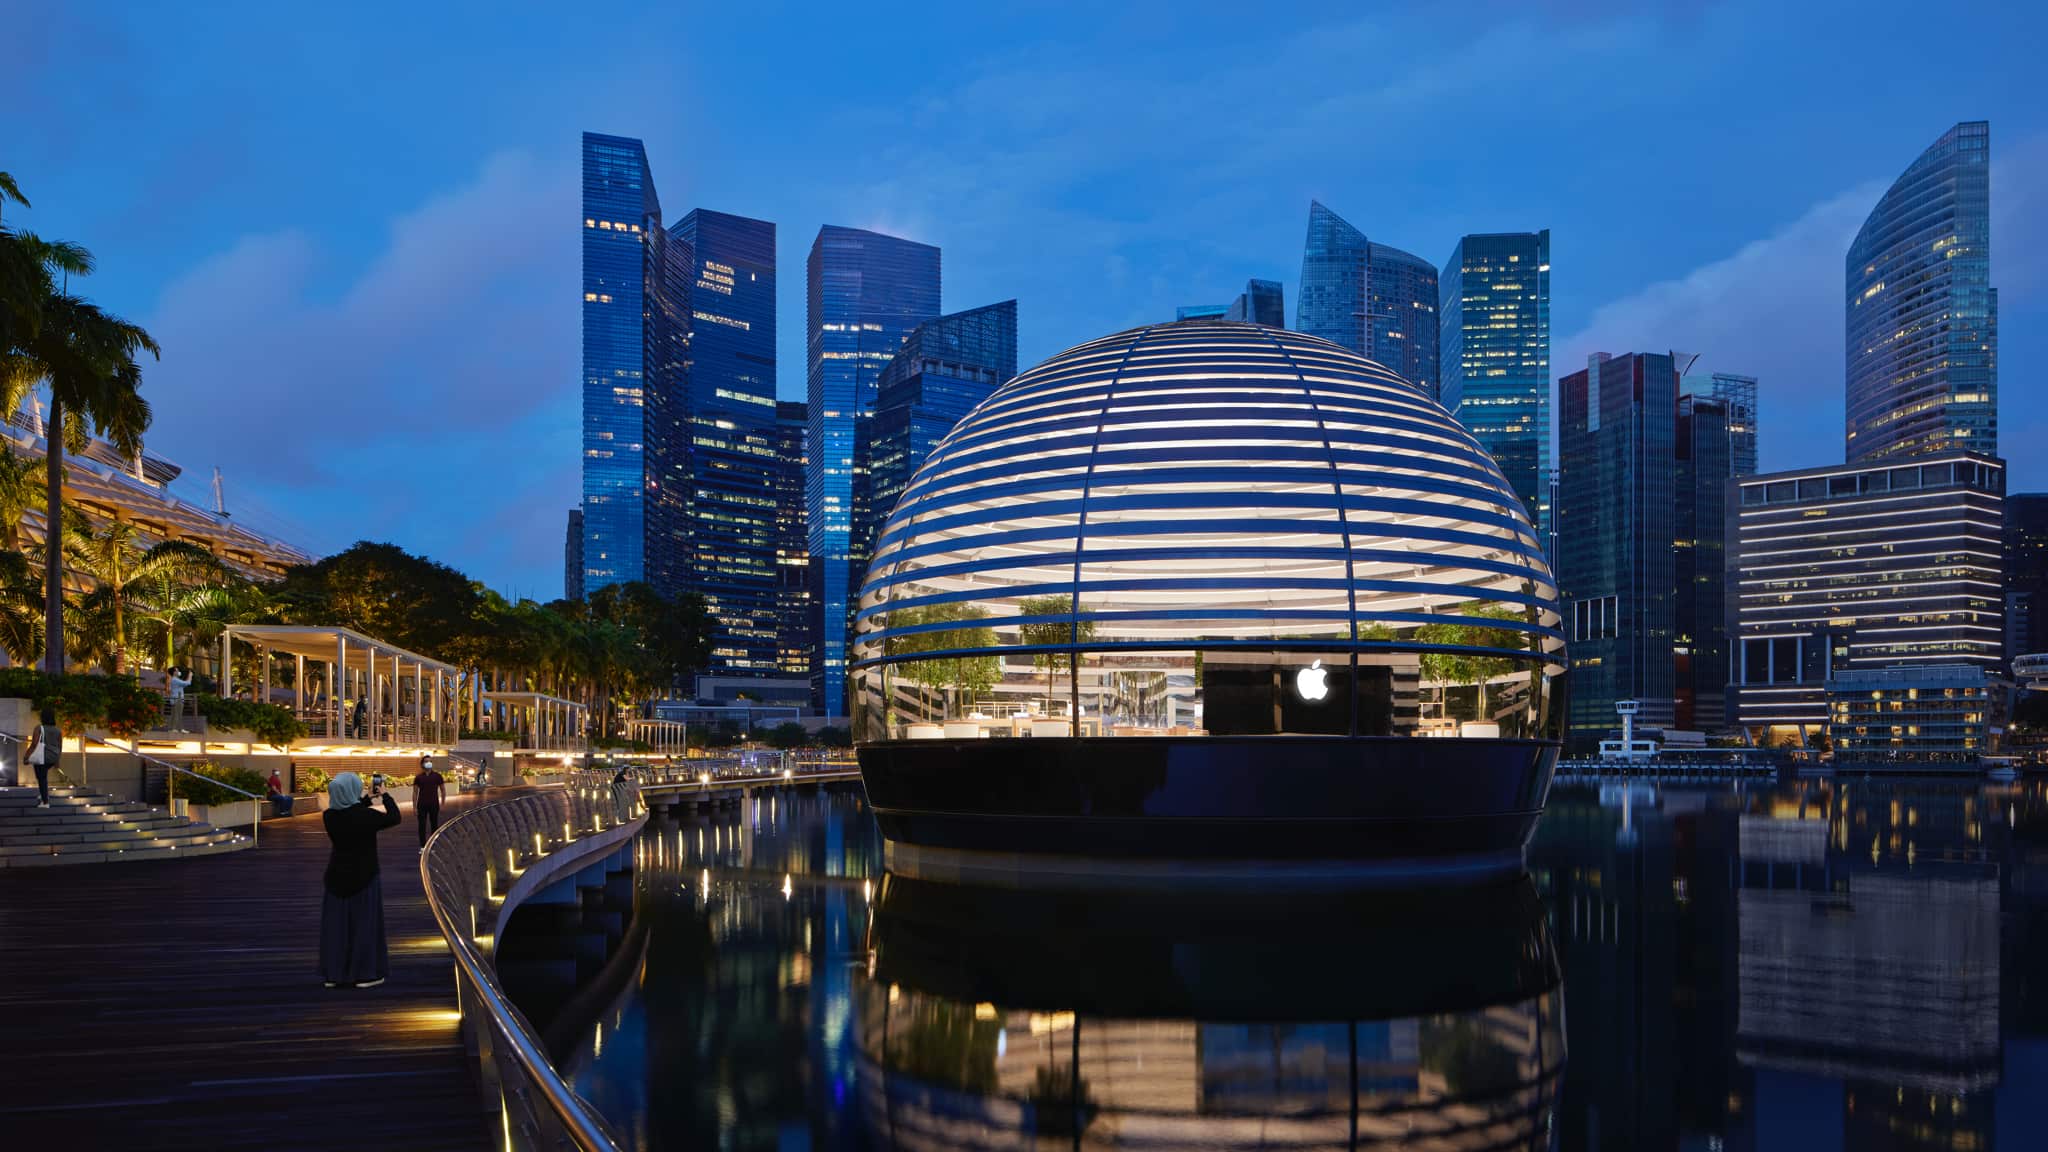 Tham quan Apple Store Bayfront (Singapore): Góc nhỏ xinh đẹp bên bờ vịnh Marina